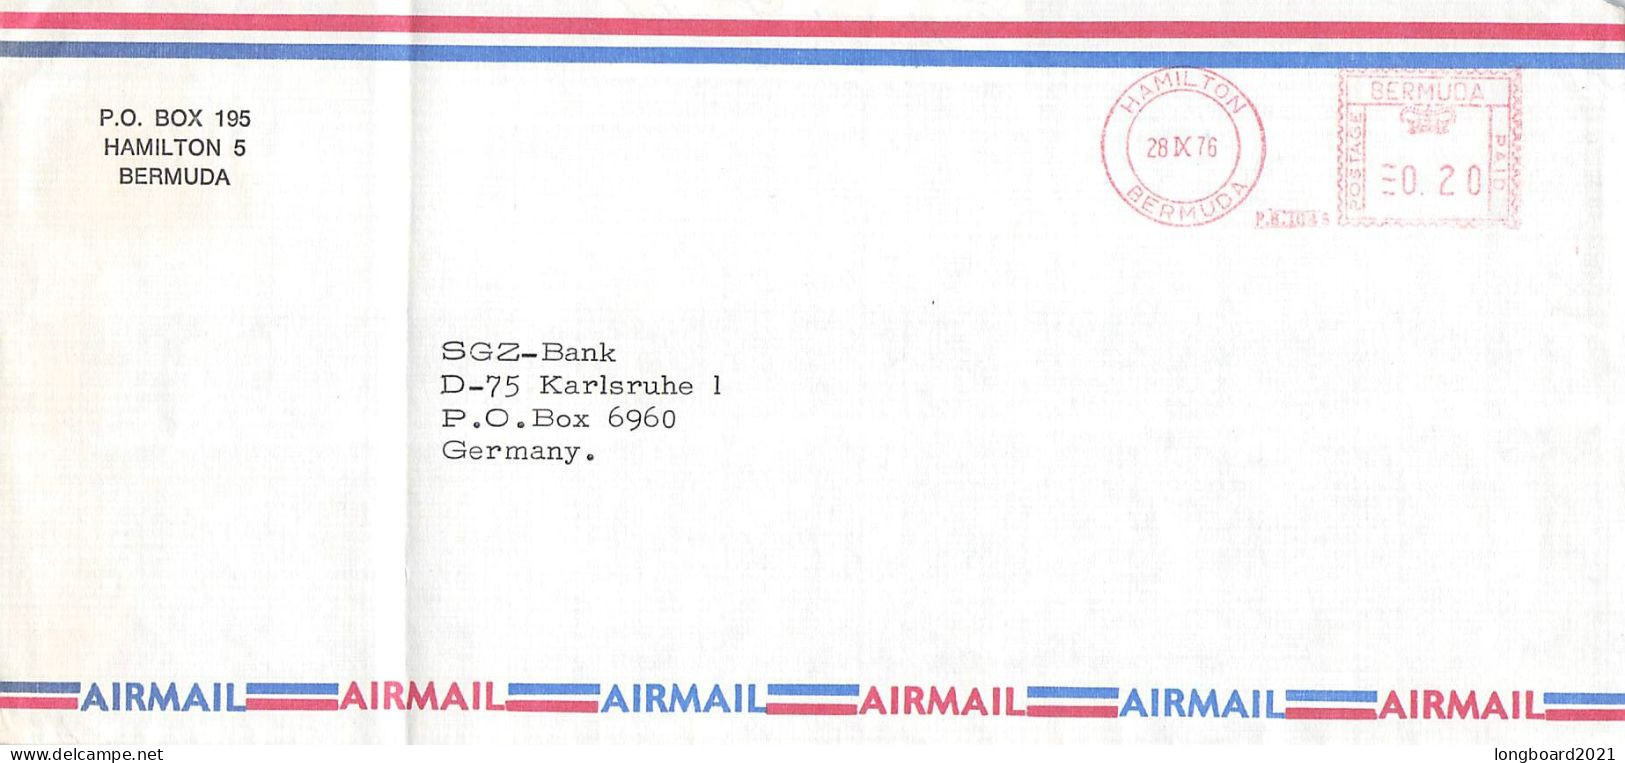 BERMUDA - AIRMAIL 1976 - KARLSRUHE/DE -METER- / 5167 - Bermuda